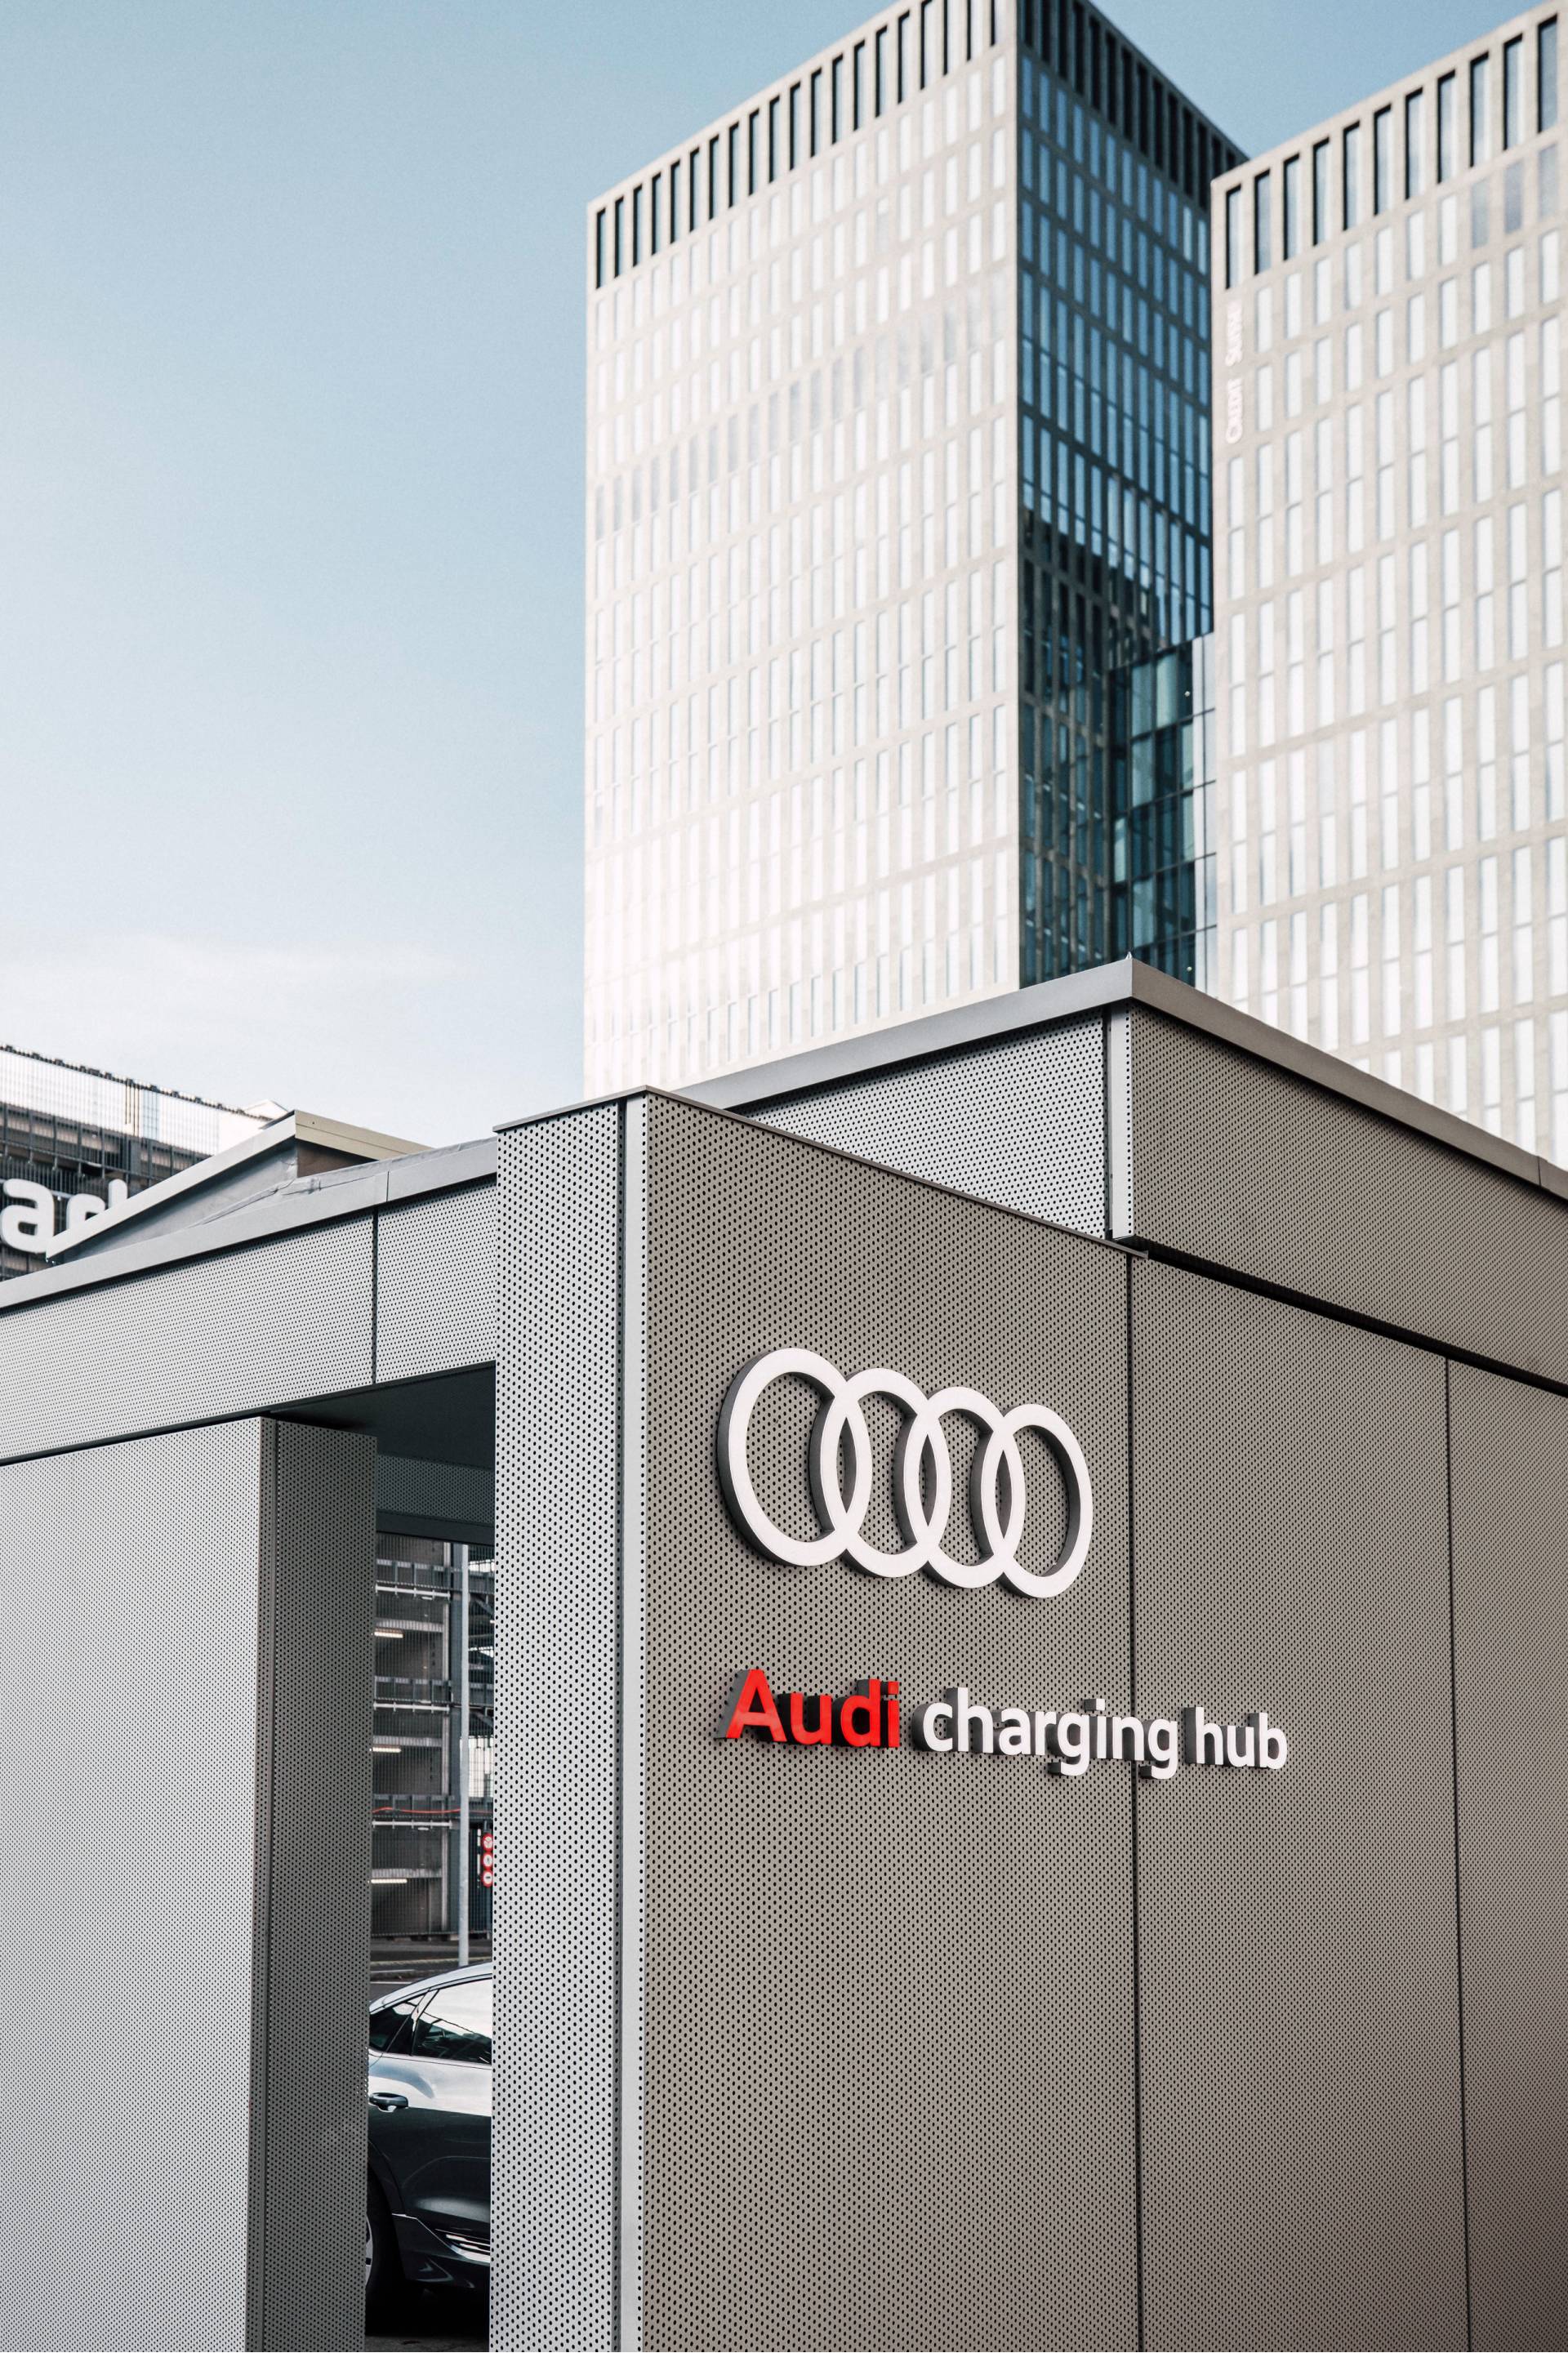 Polo di ricarica Audi, sullo sfondo i grattacieli.